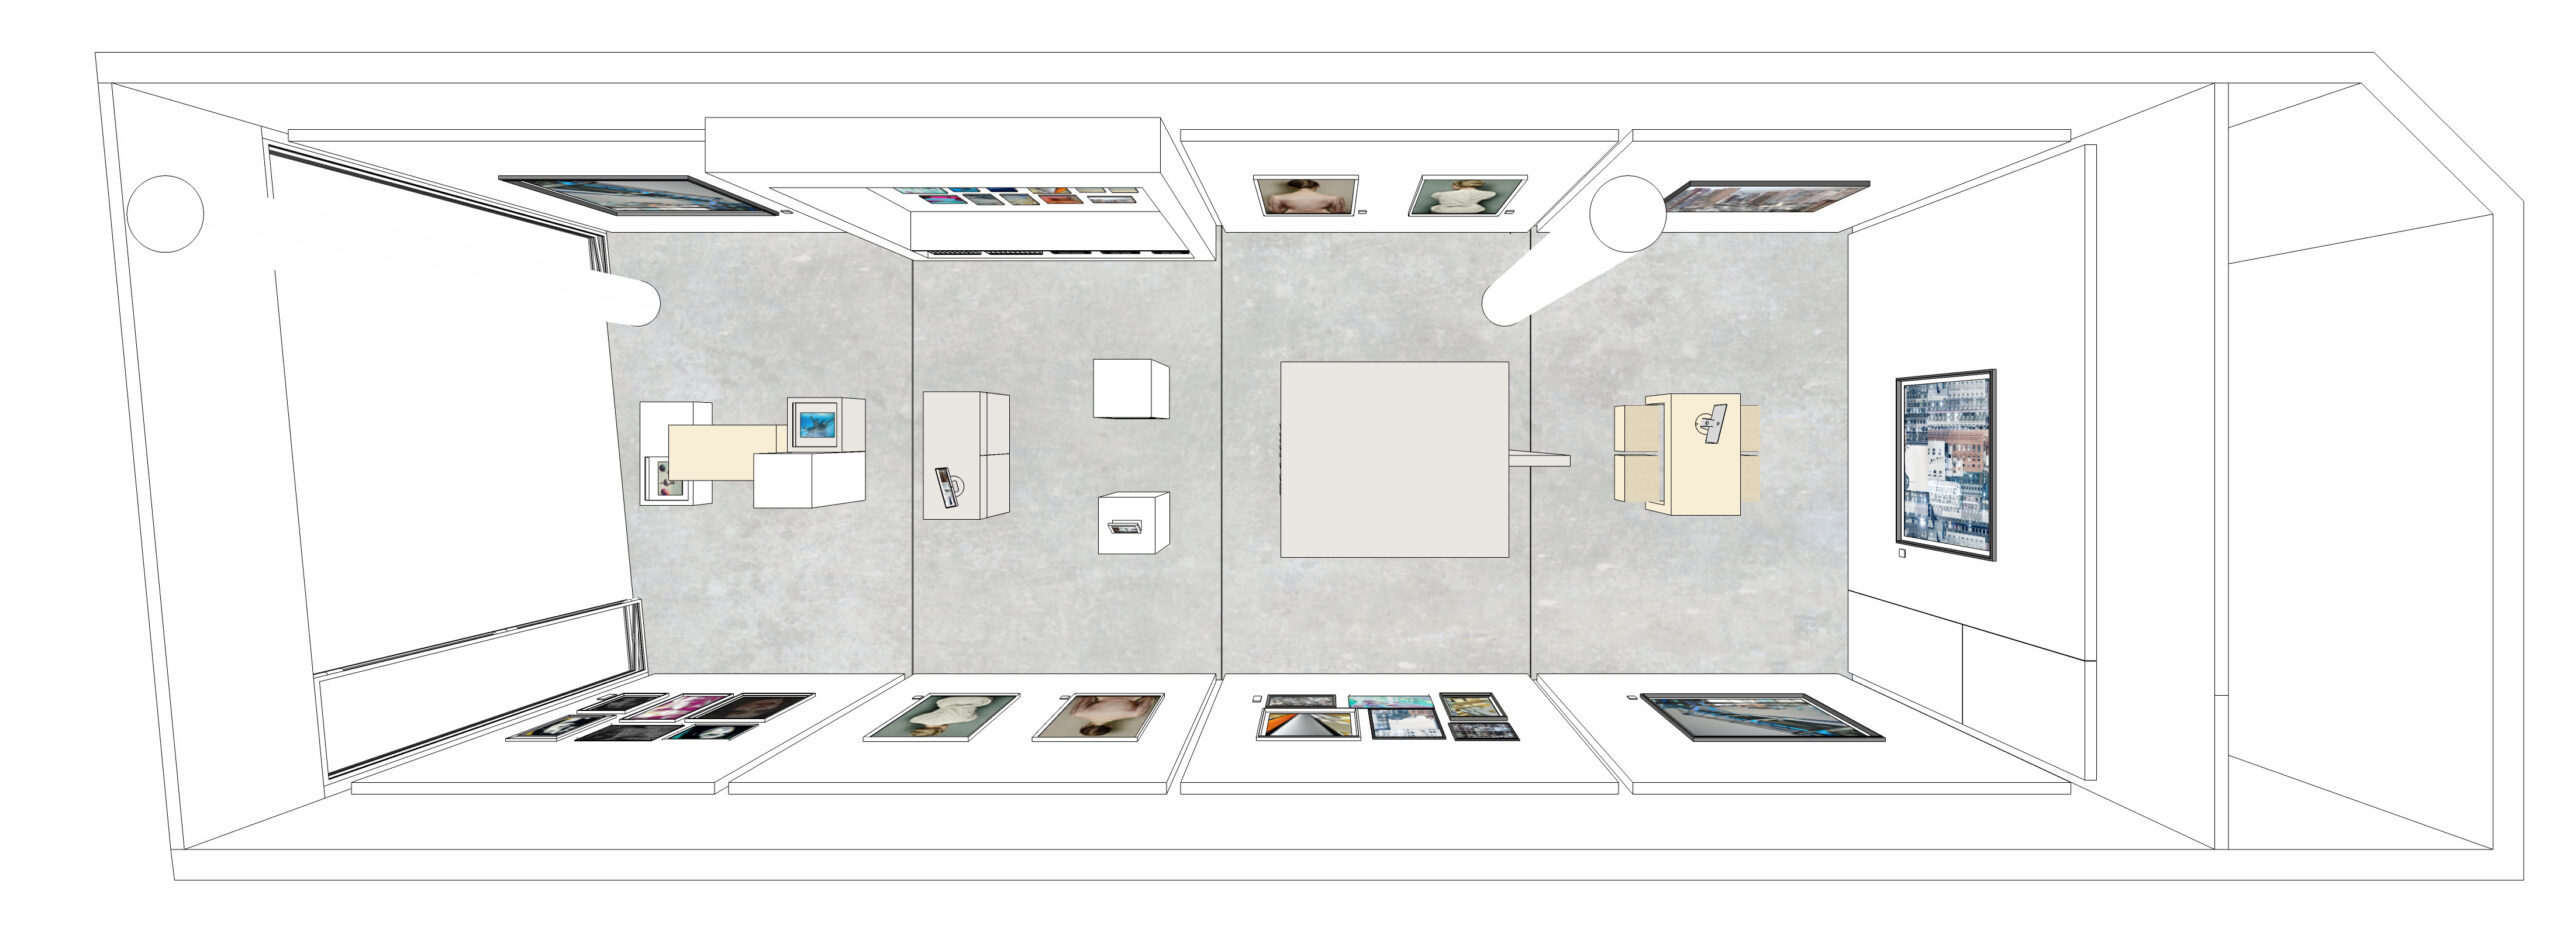 gallerie innenarchitektur für Lumas Helle moderne Räume bilden einen Rahmen für Kunstwerke